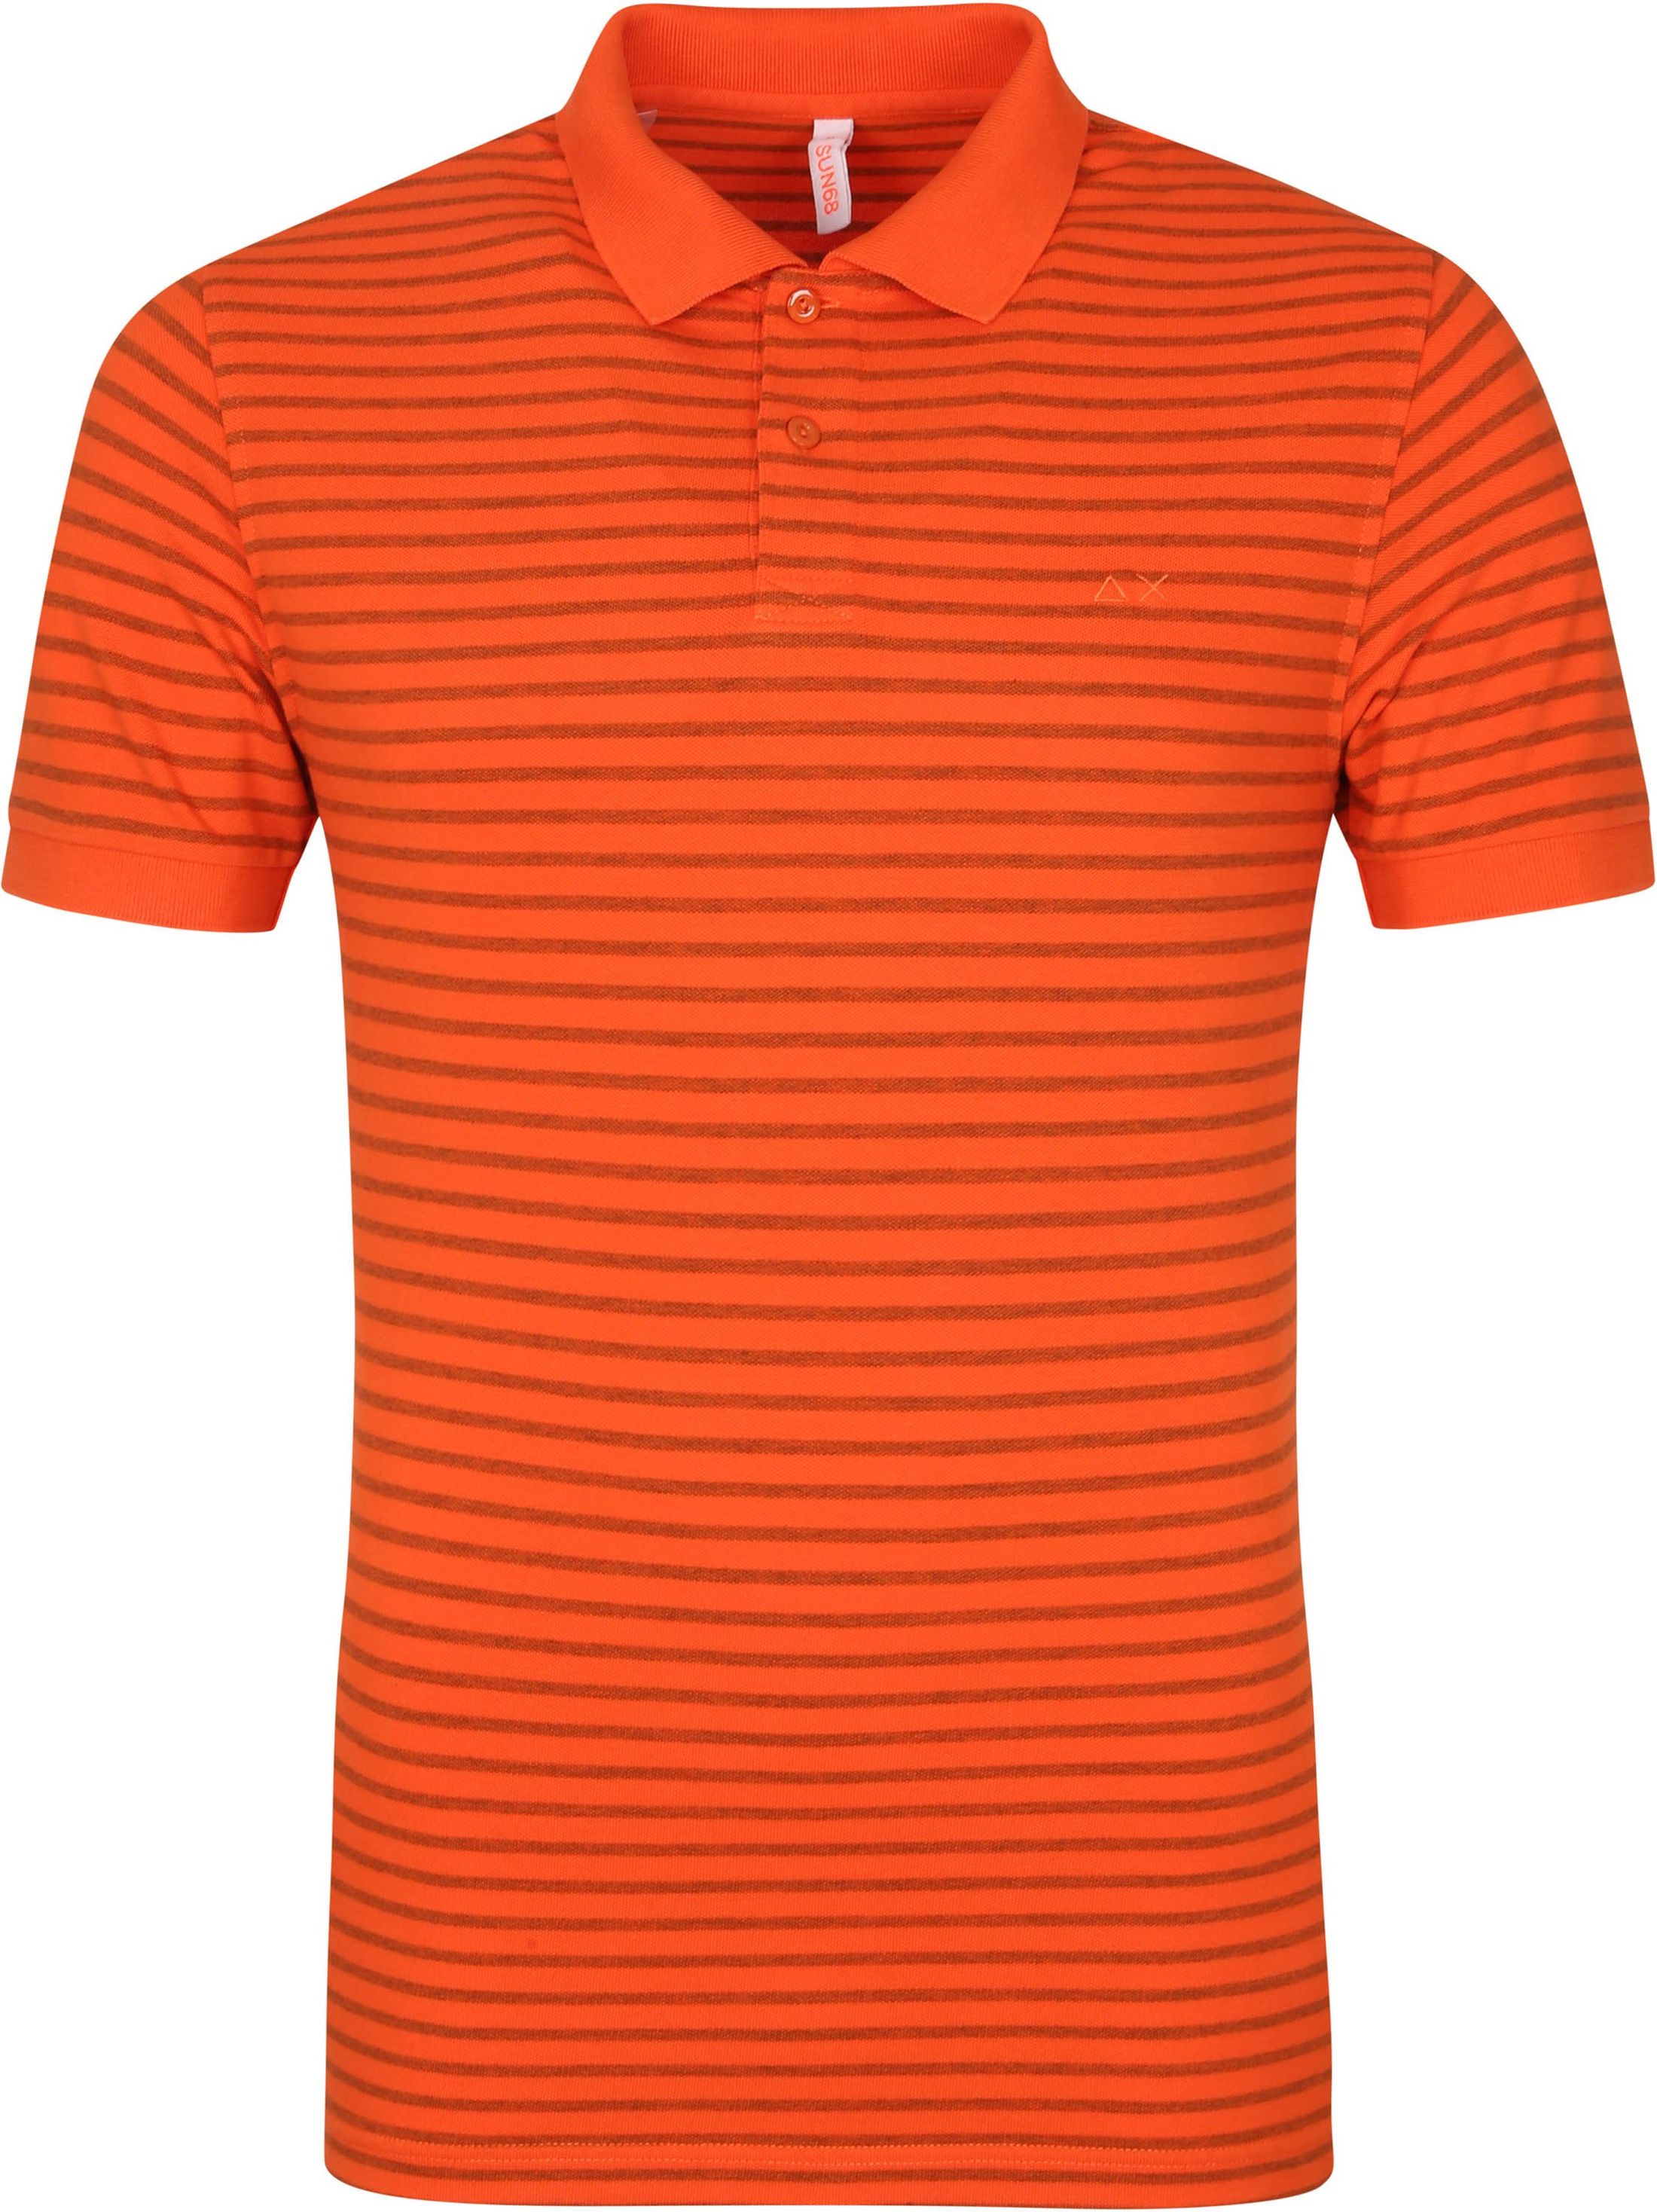 Sun68 Polo Shirt Dye Stripes Orange size L